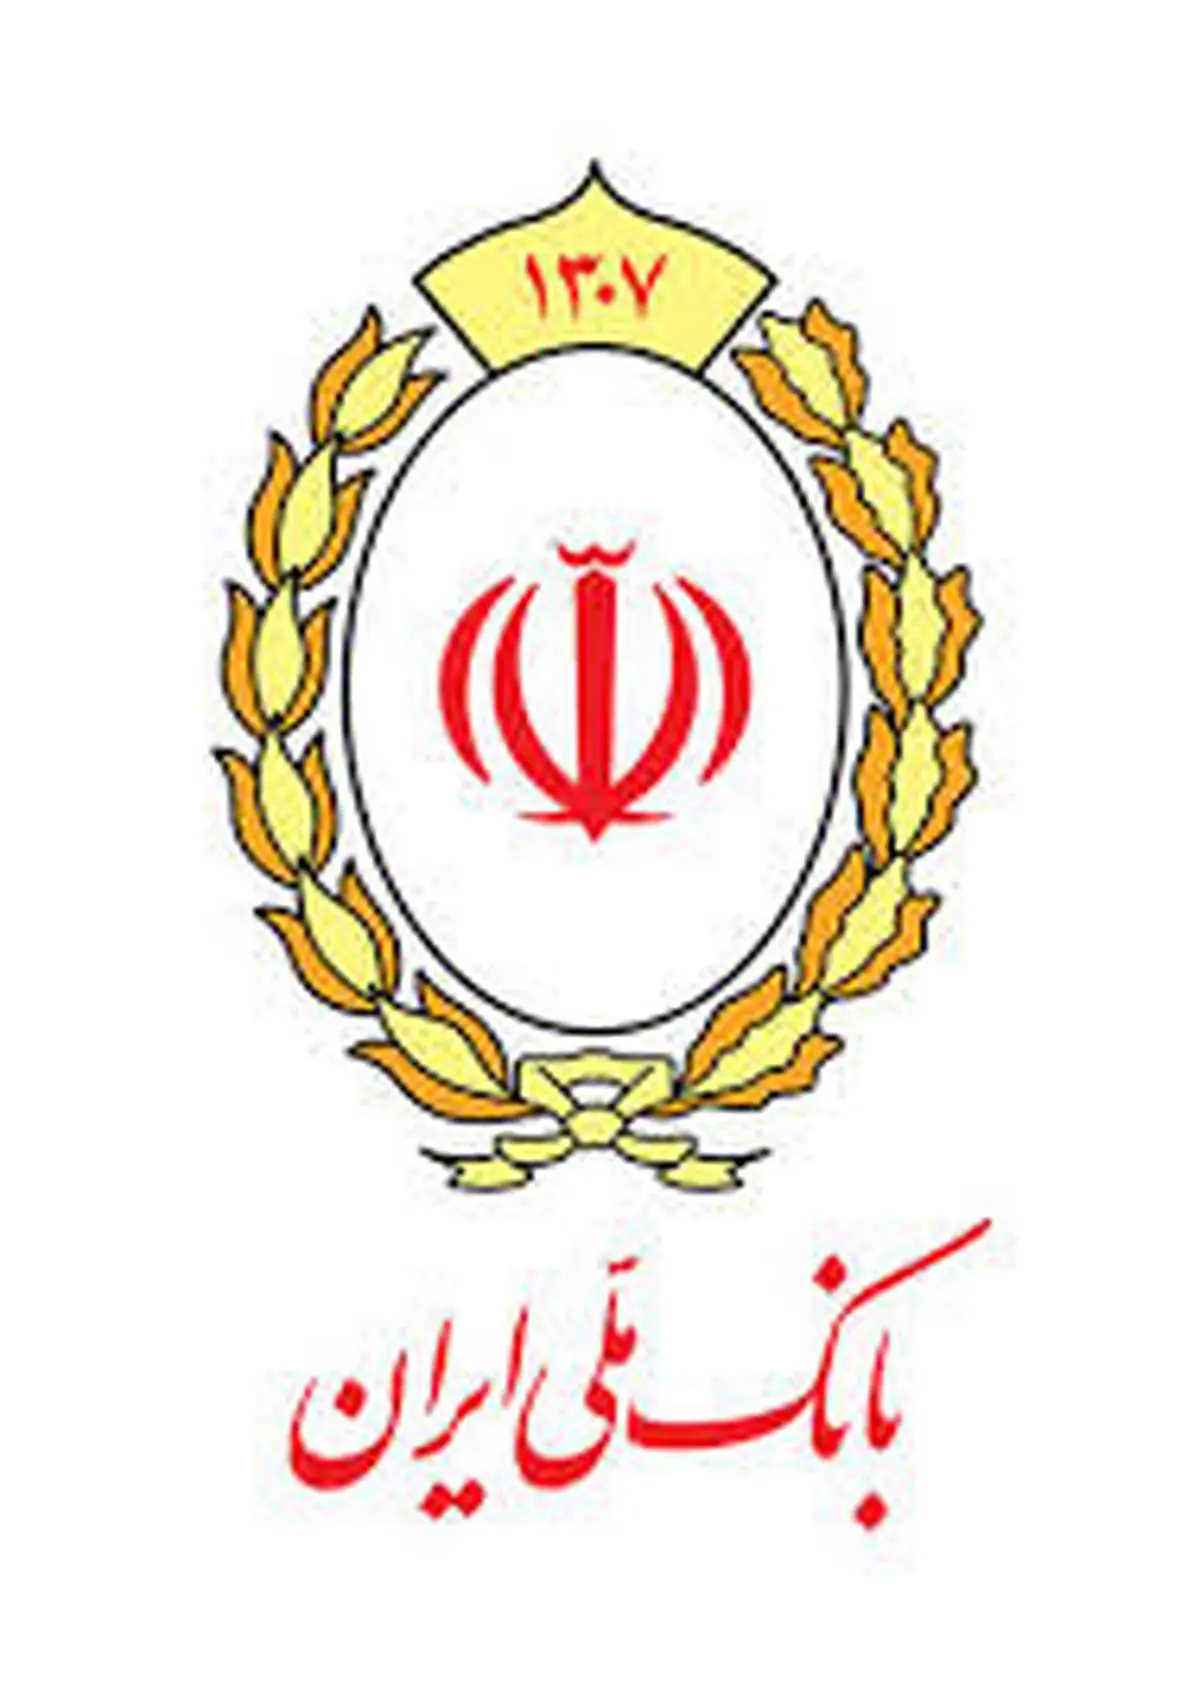 اطلاعیه بانک ملی ایران درباره انسداد حساب های مشتریان حقیقی فاقد کد شهاب

